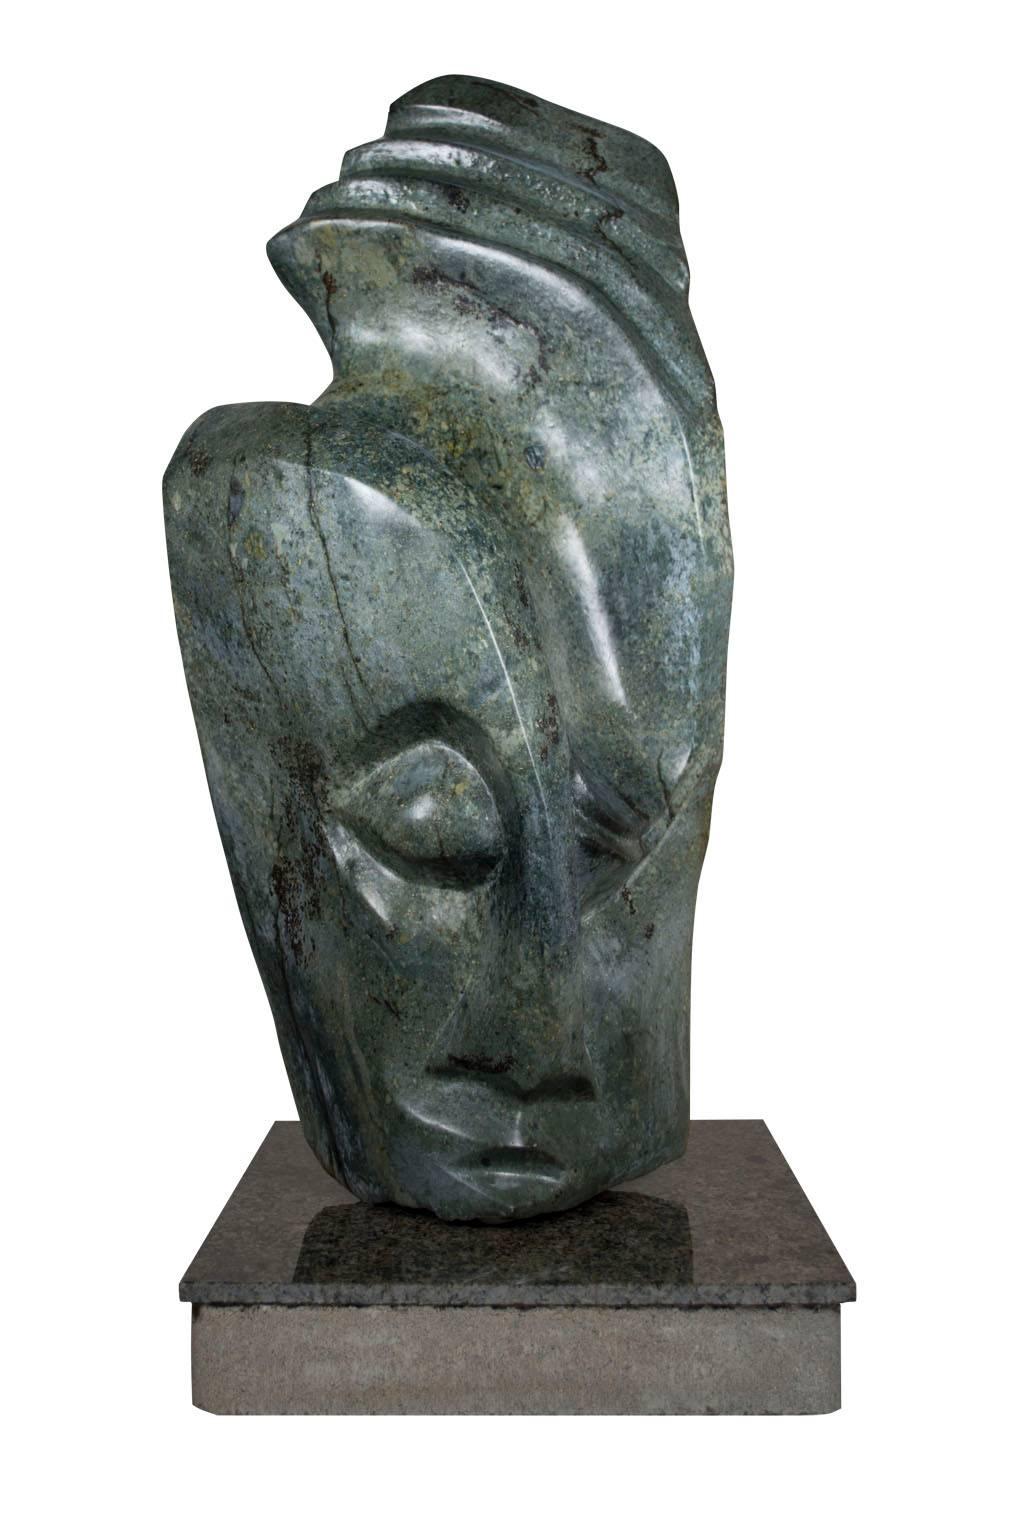 "Shona Chief" est une sculpture originale en serpentine signée par l'artiste Chemedu Jemali. Ce sculpteur travaille dans la tradition shona du Zimbabwe. La sculpture représente la tête abstraite d'un homme et pèse 40 kg. La signature est au